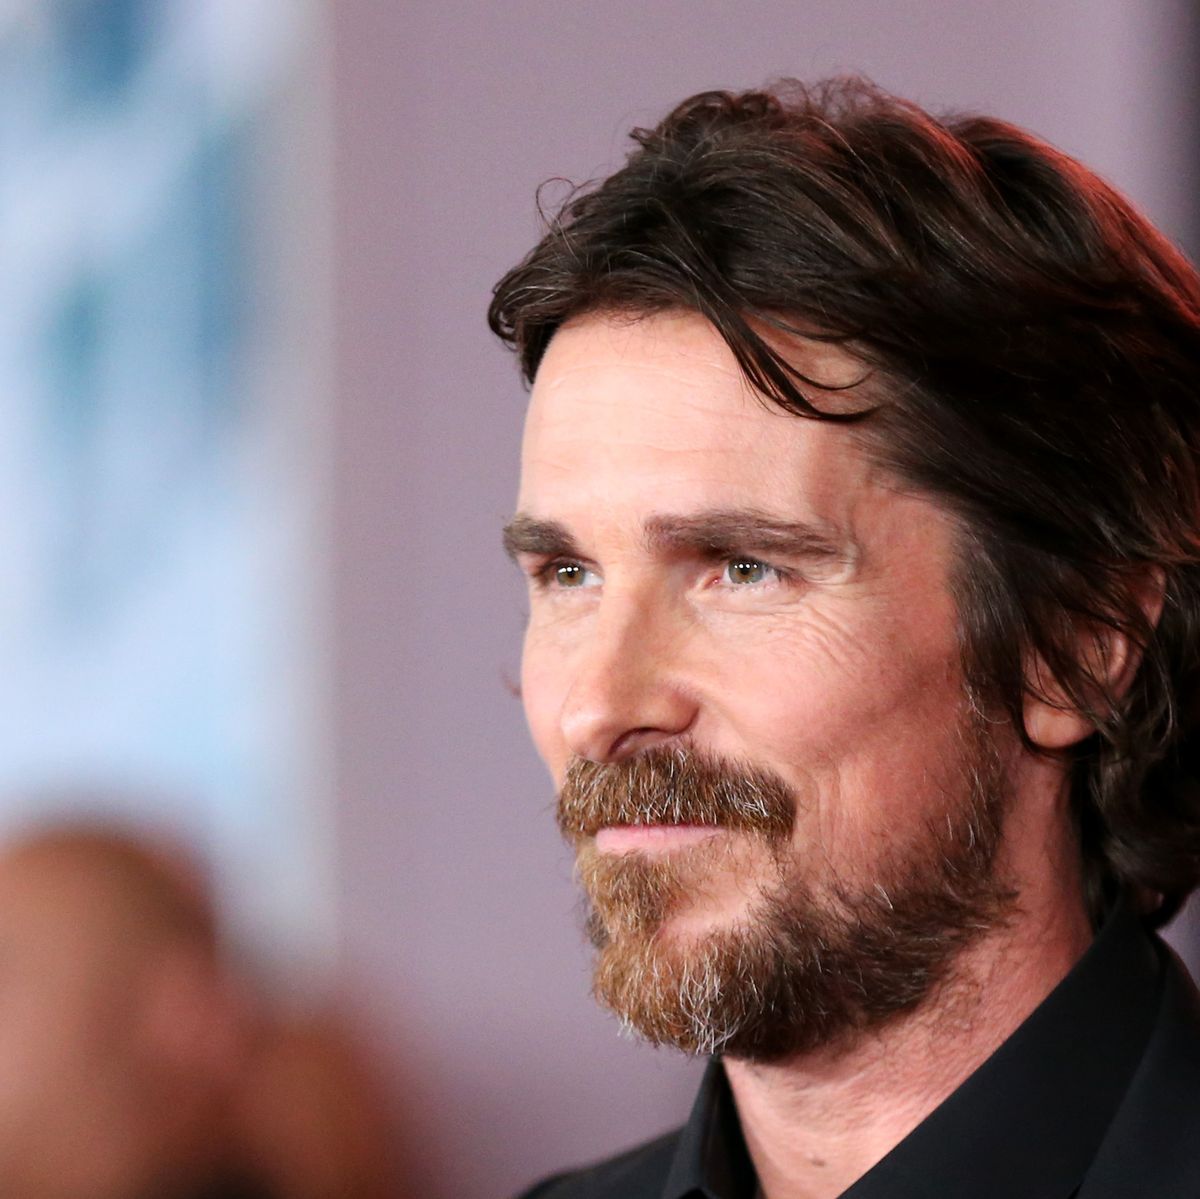 Las 15 mejores películas de Christian Bale que hay que ver